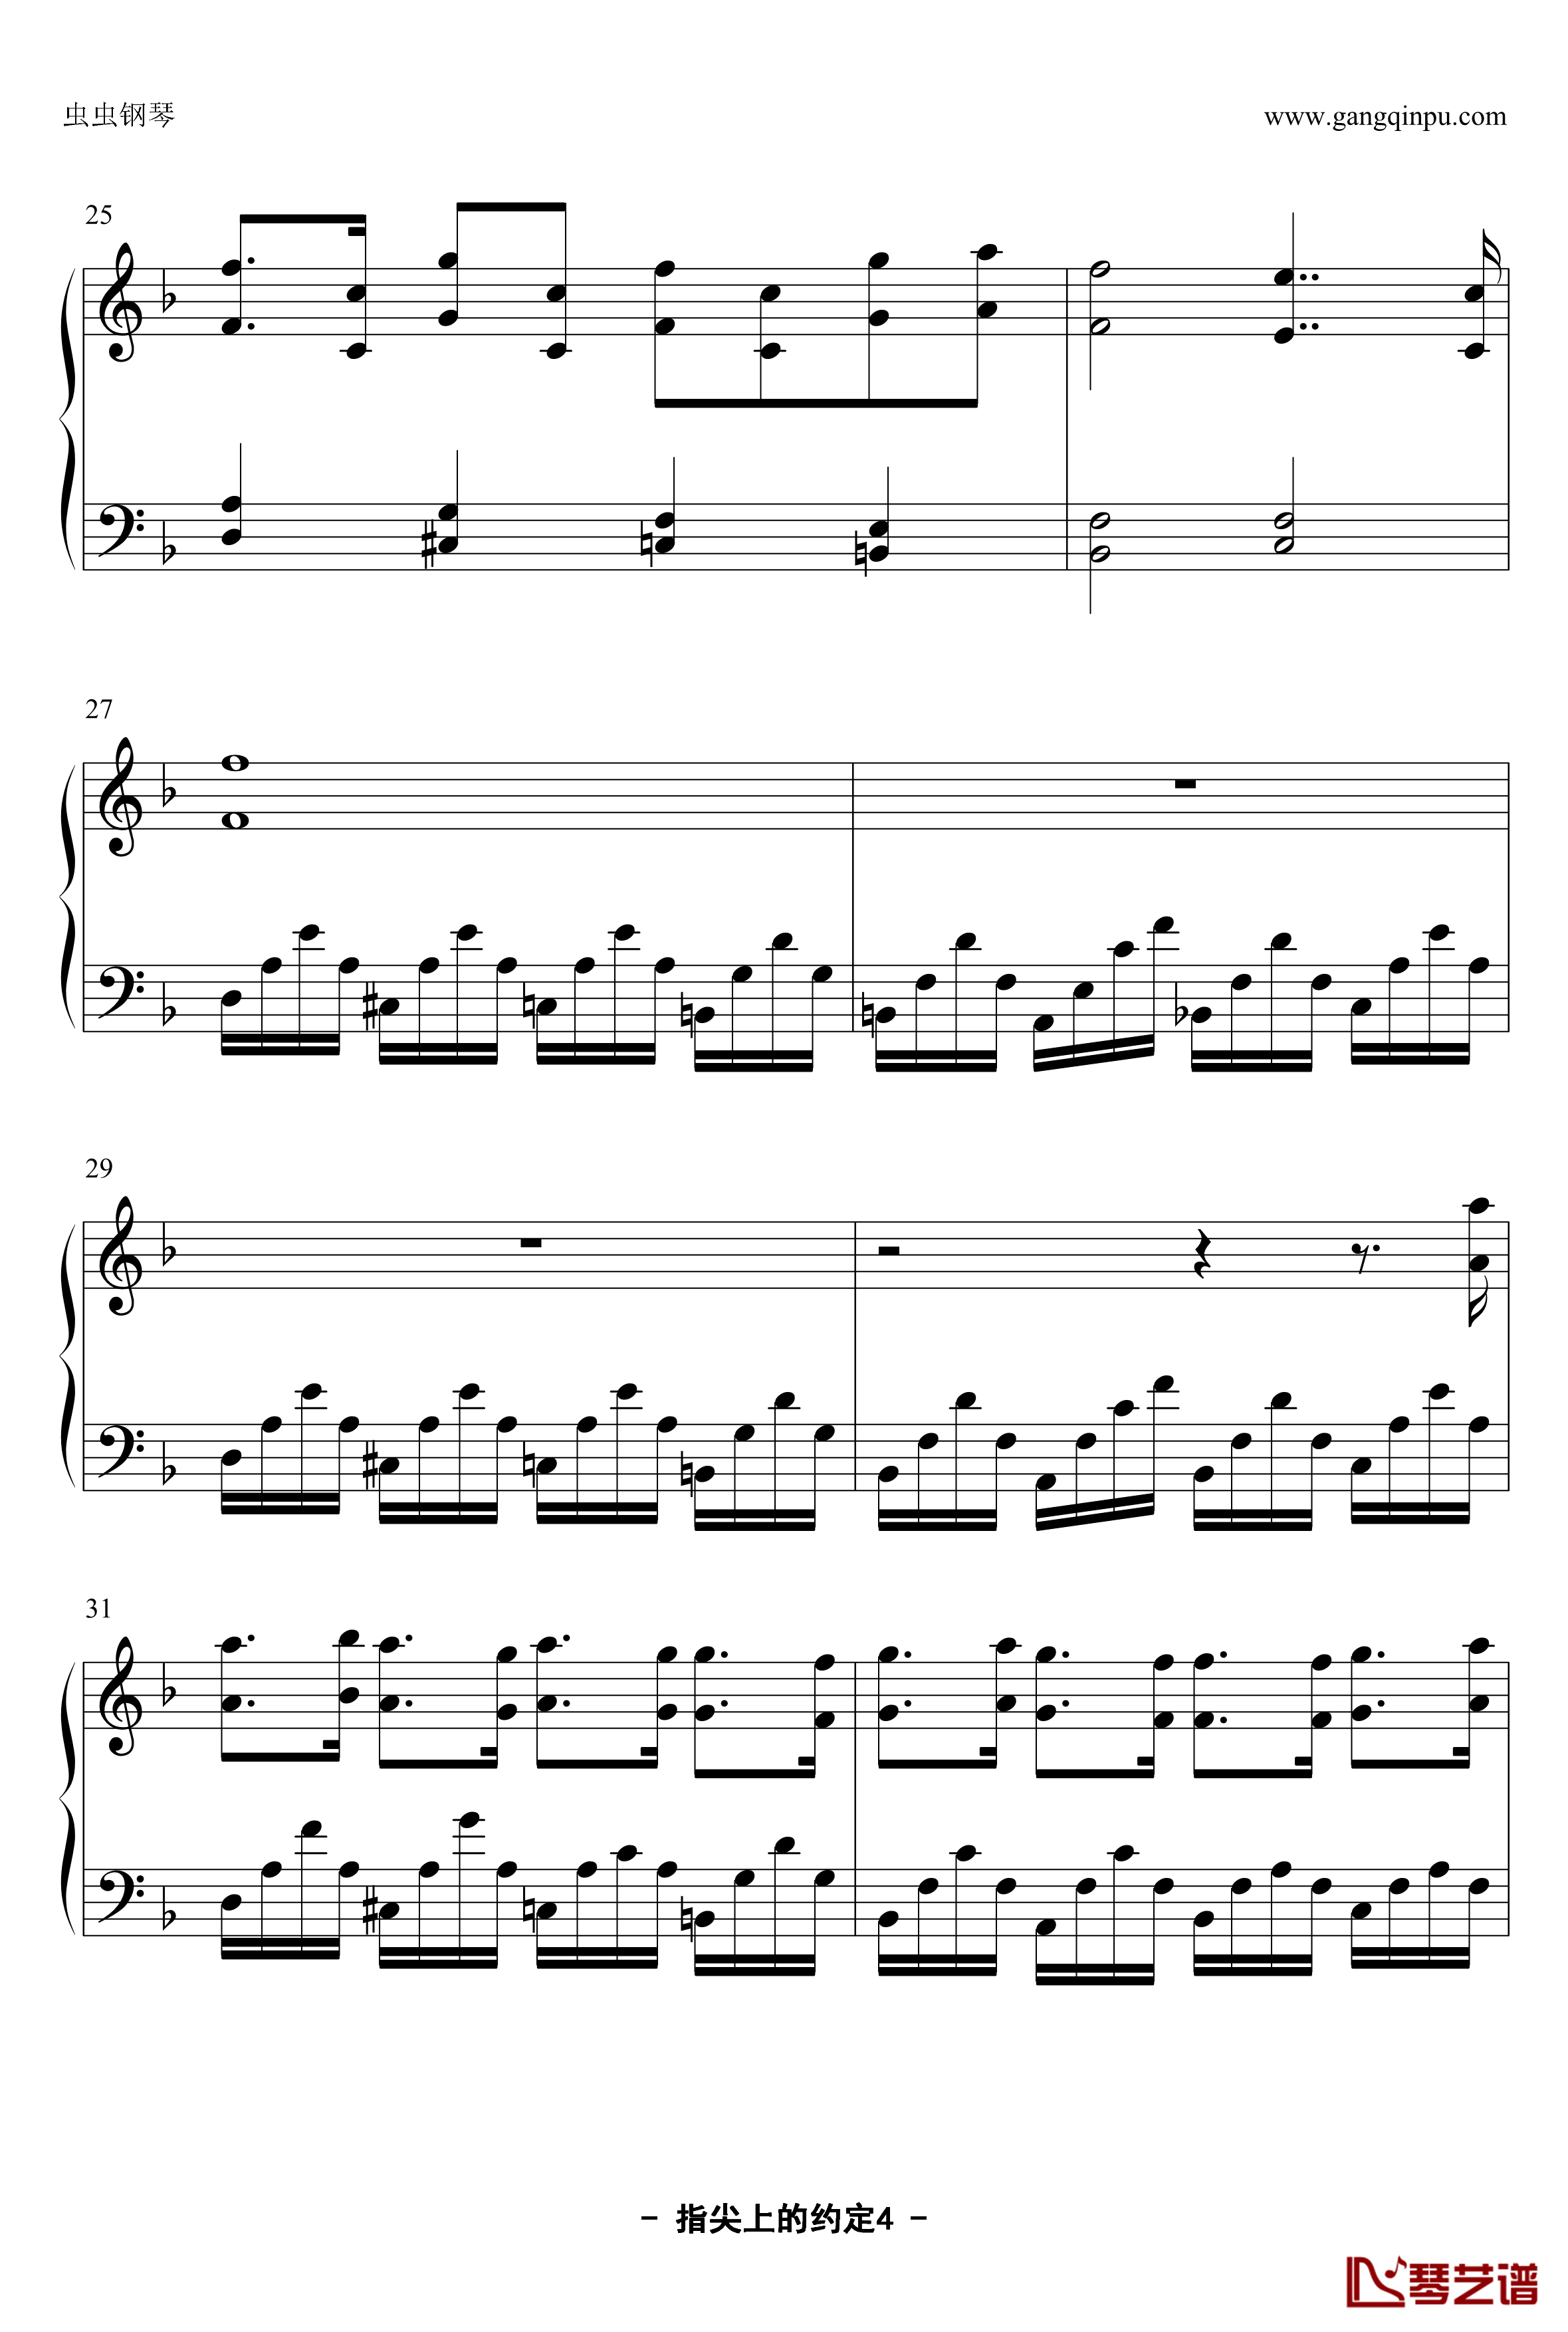 指尖上的约定钢琴谱-YUBIKIRI-GENMAN-Mili4